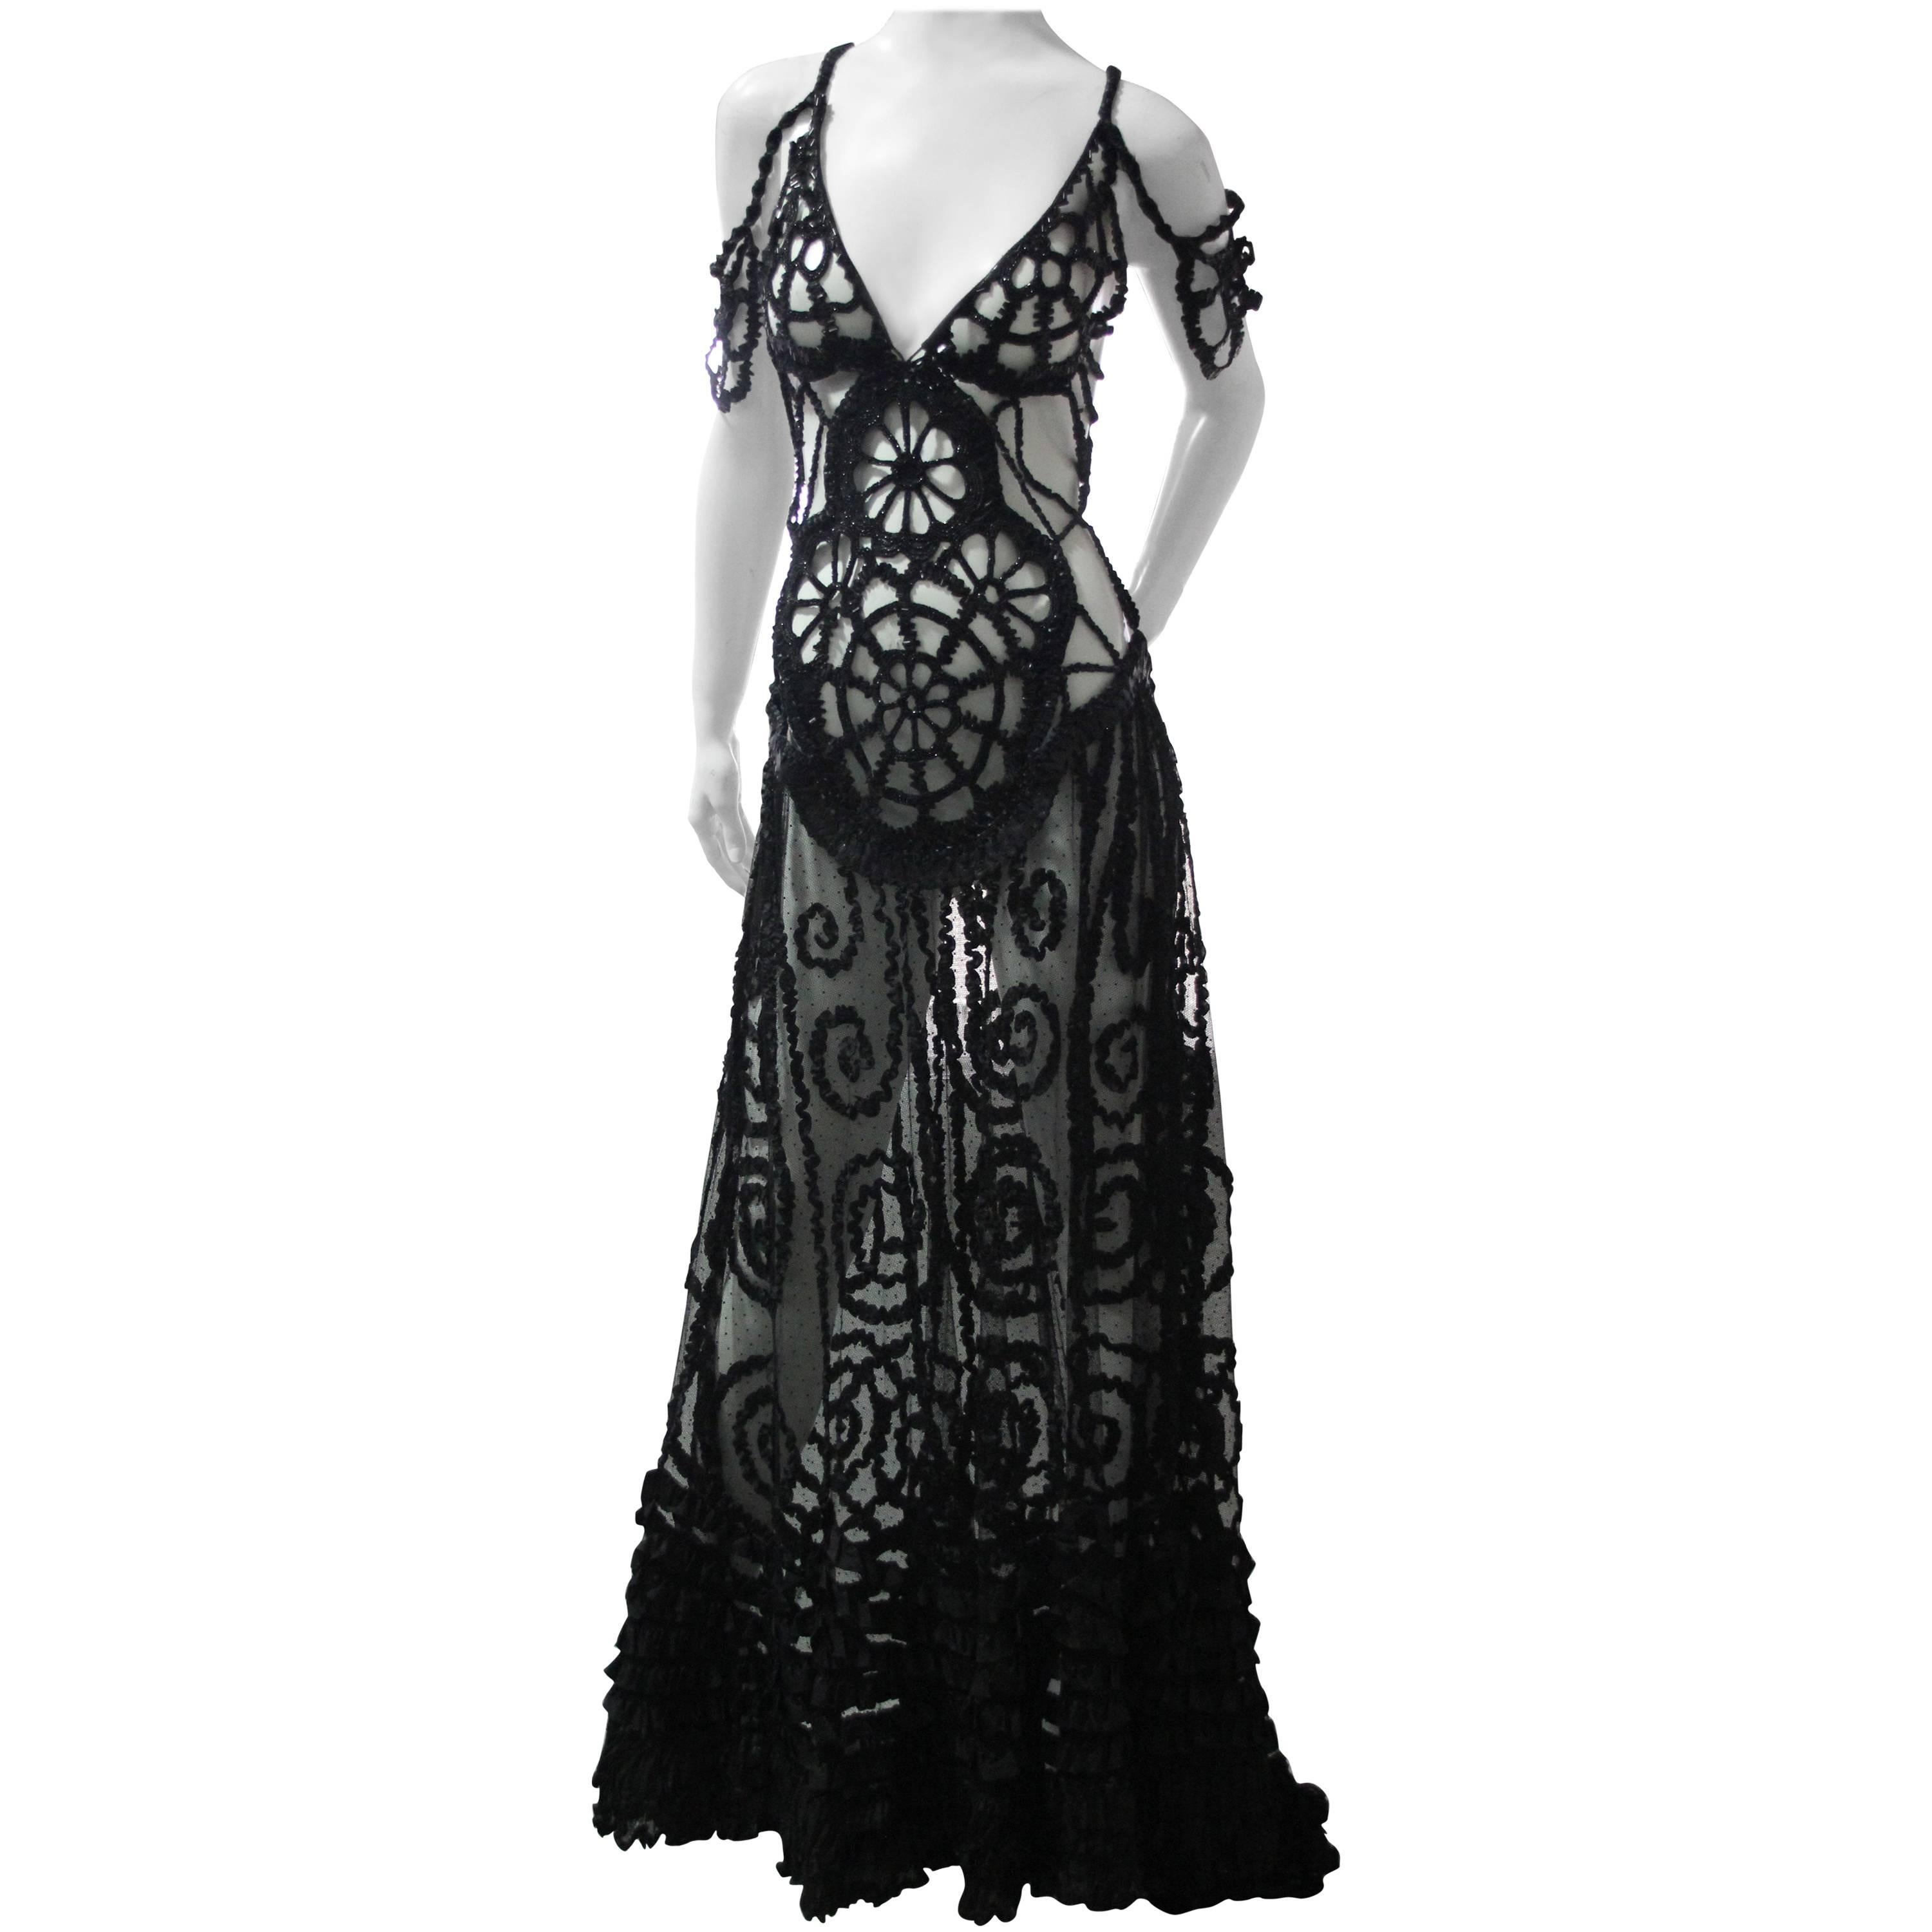 Schwarzes schwarzes weibliches Peek-a-Boo-Kleid aus Tüll mit viktorianischen Perlenverzierungen, Rüschen und Leder